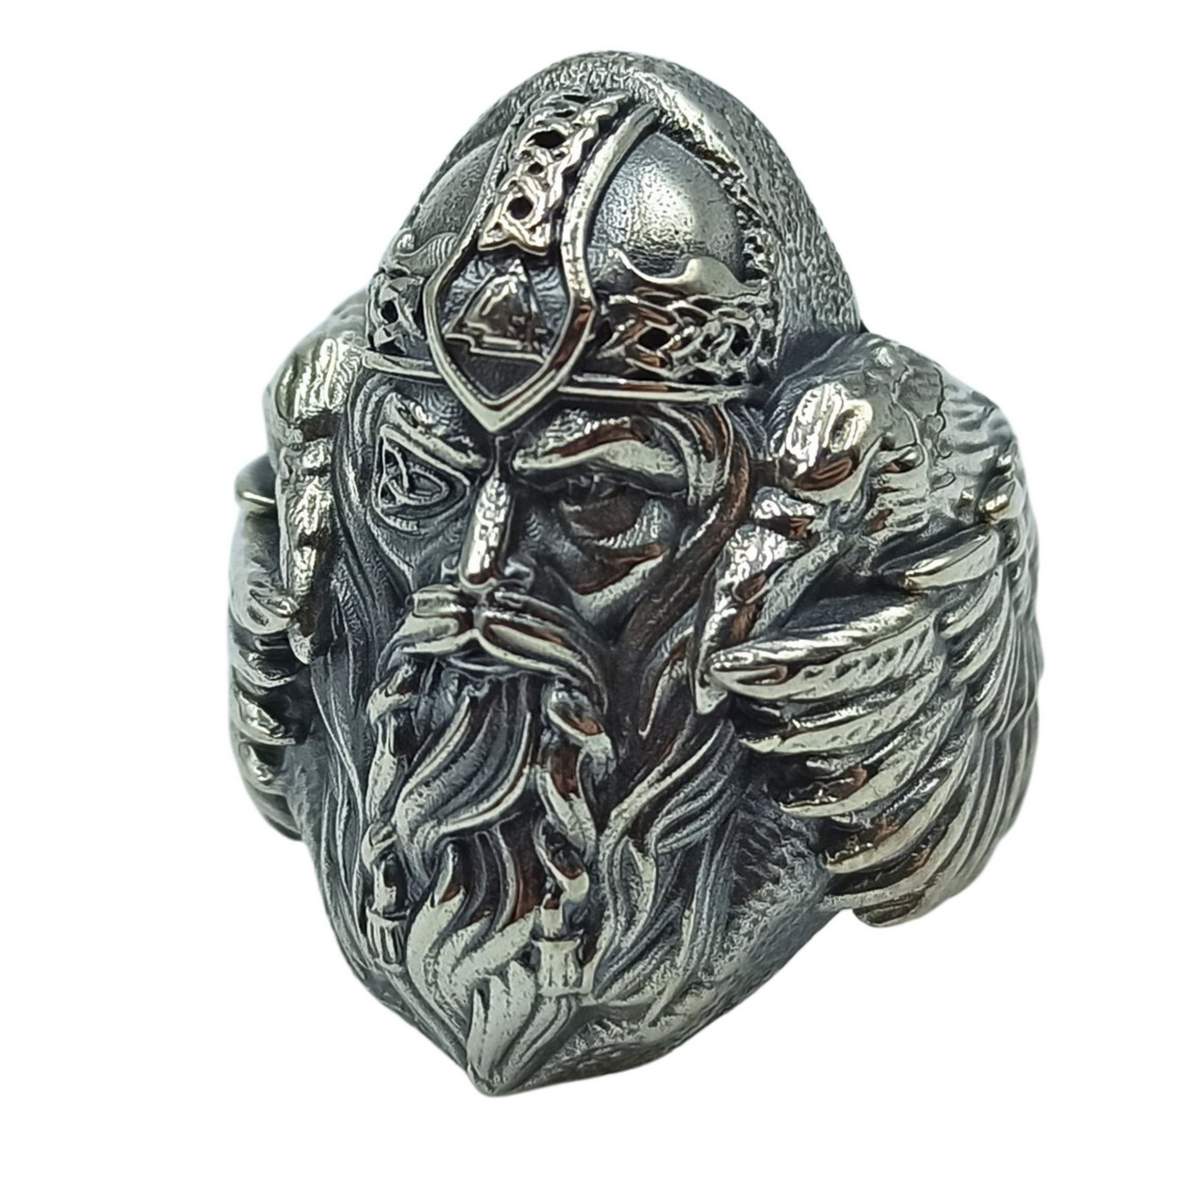 Odin silver massive ring 8 US/CA  